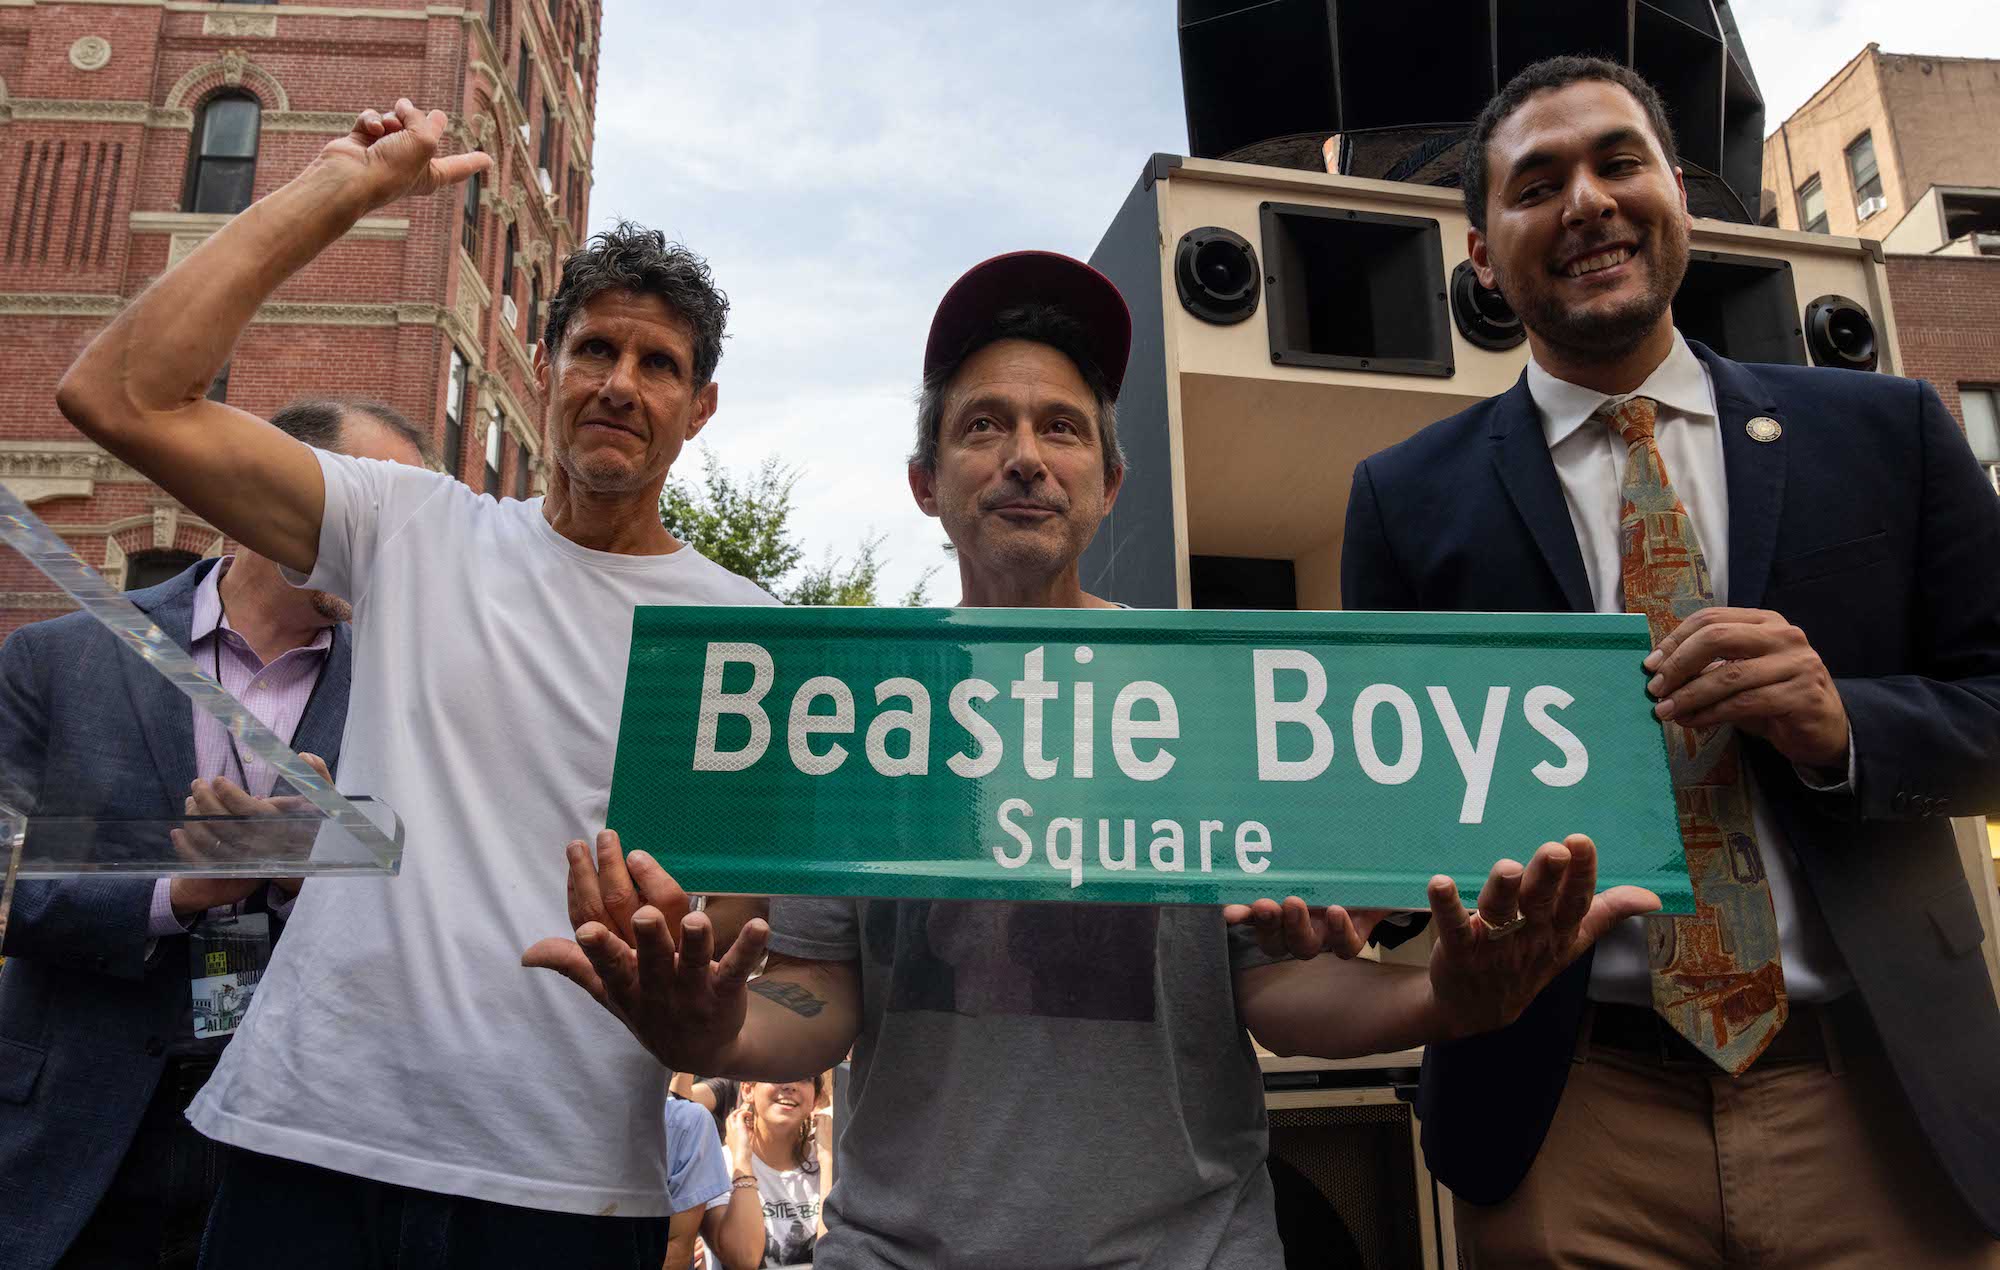 El cruce "Paul's Boutique" pasa a llamarse oficialmente Plaza Beastie Boys